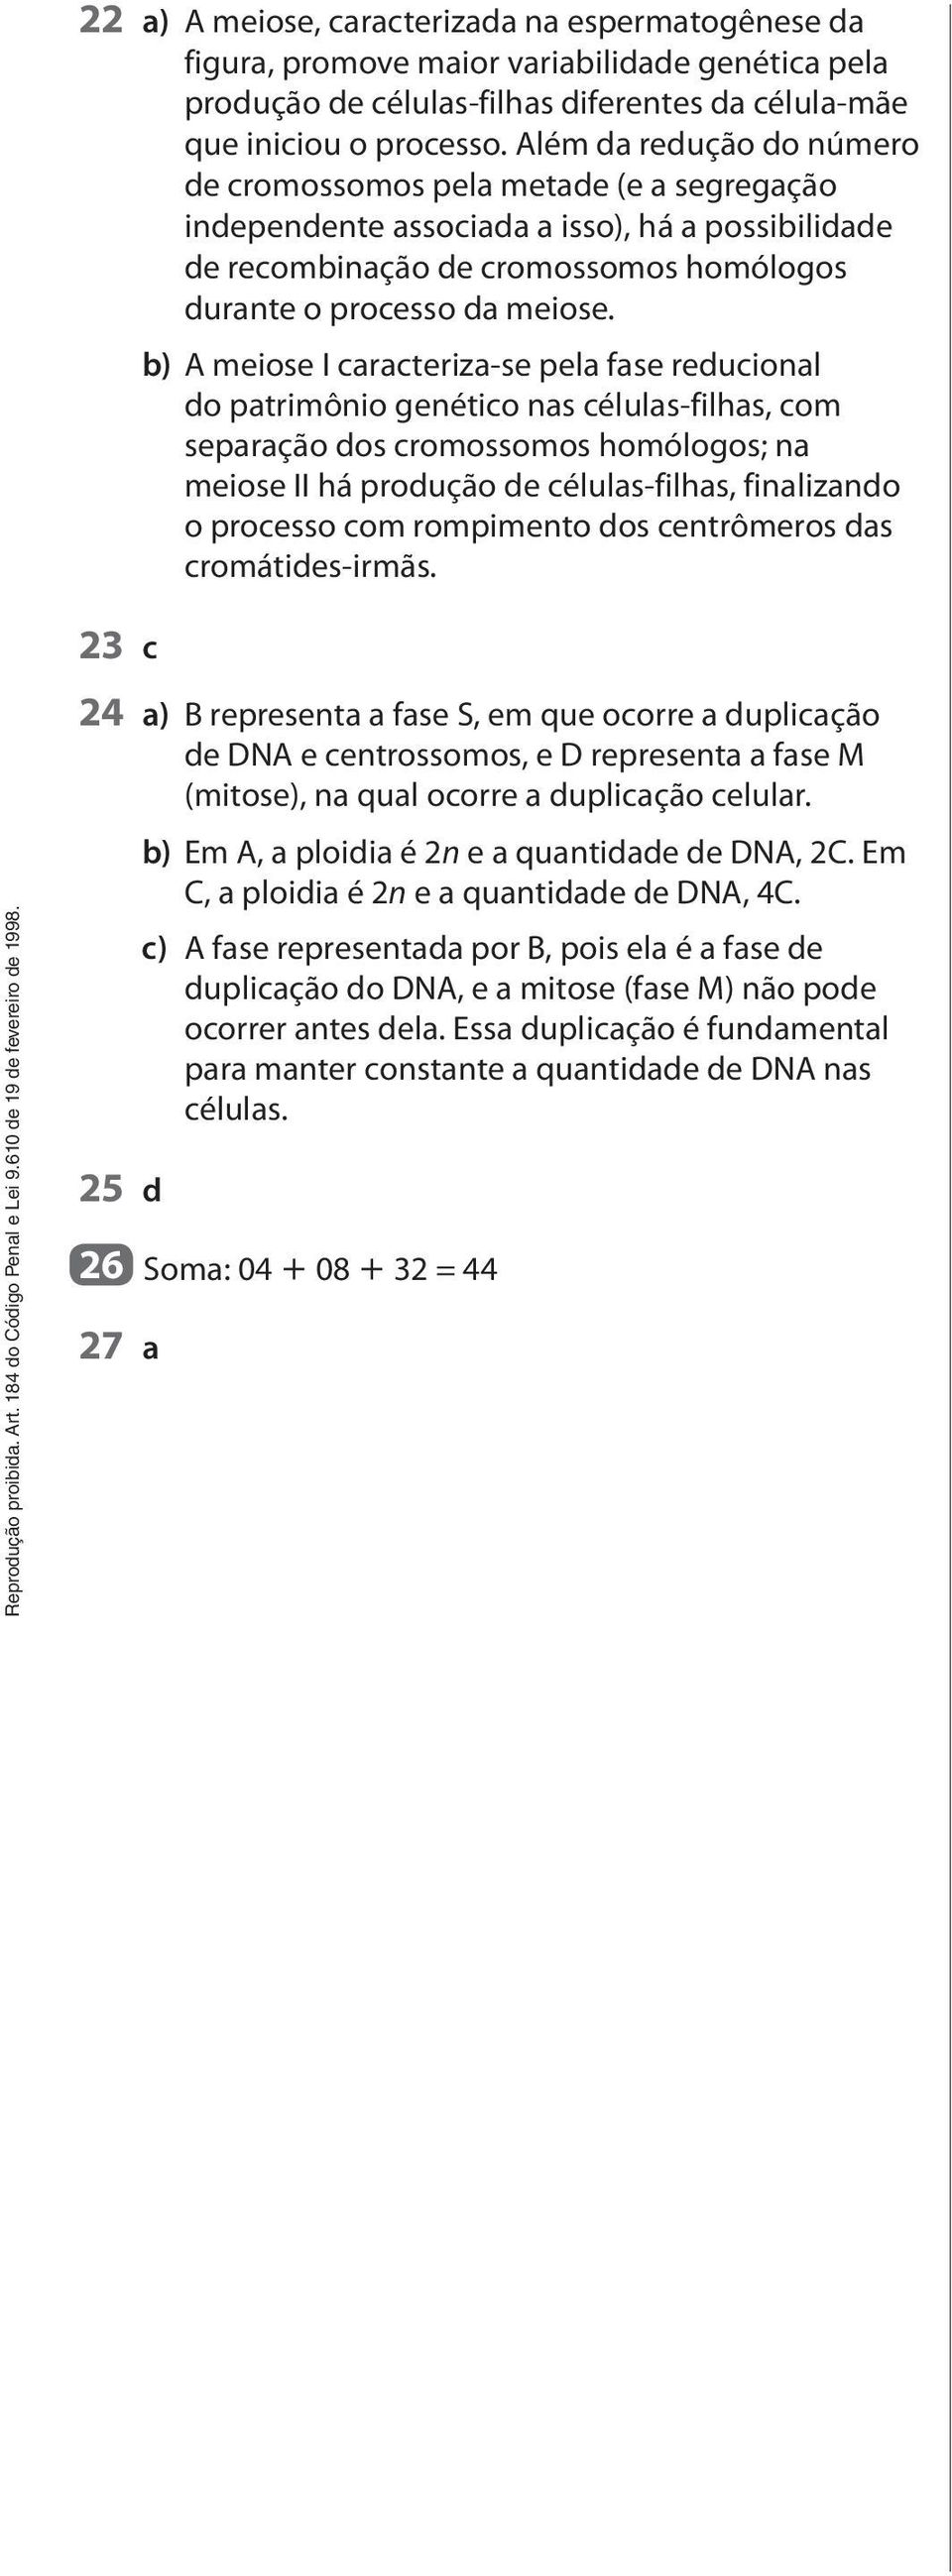 23 c b) A meiose I caracteriza-se pela fase reducional do patrimônio genético nas células-filhas, com separação dos cromossomos homólogos; na meiose II há produção de células-filhas, finalizando o